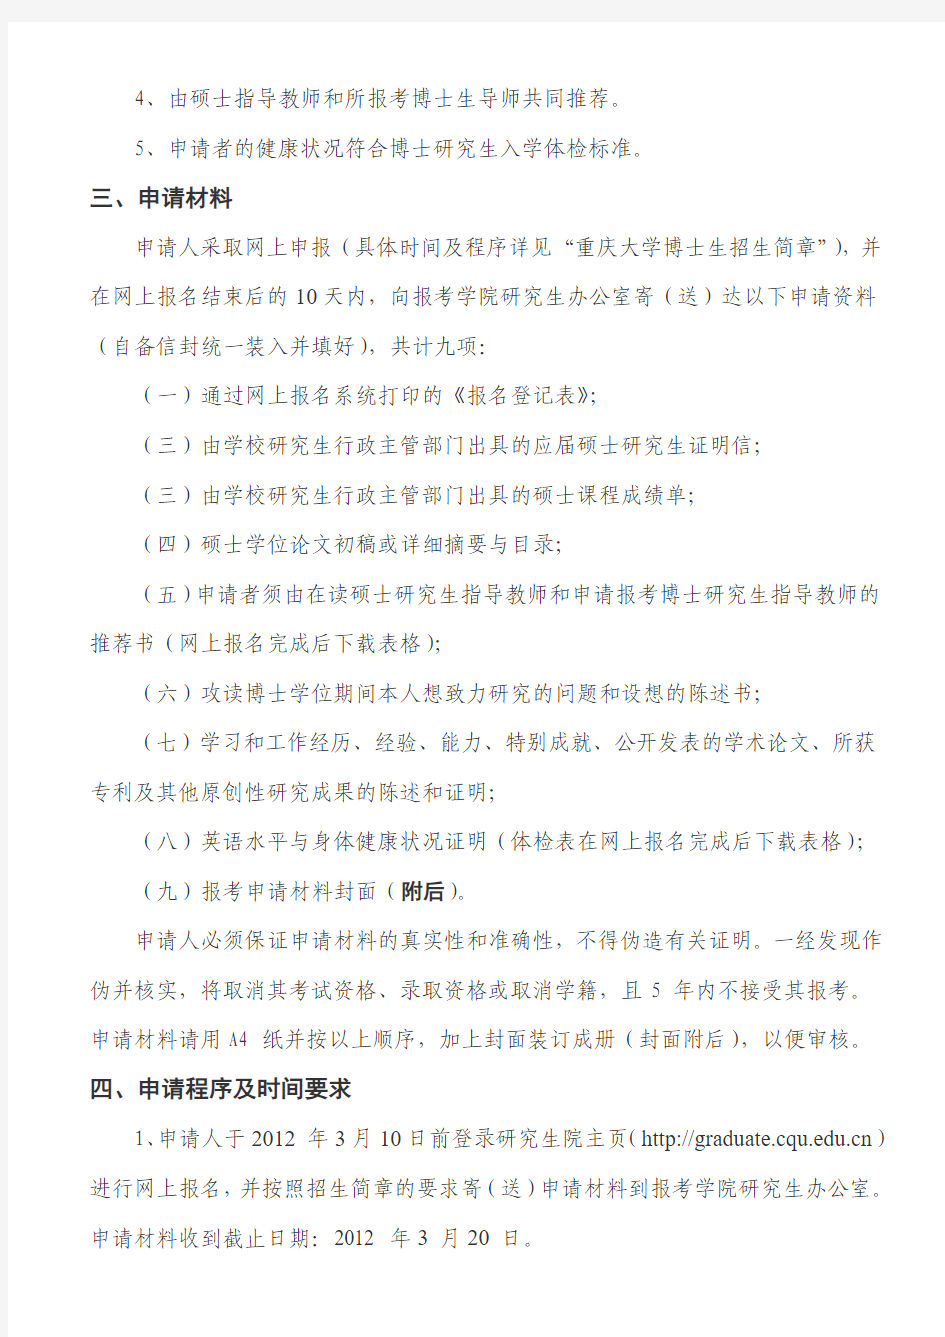 重庆大学招收《申请-考核制》博士生简章